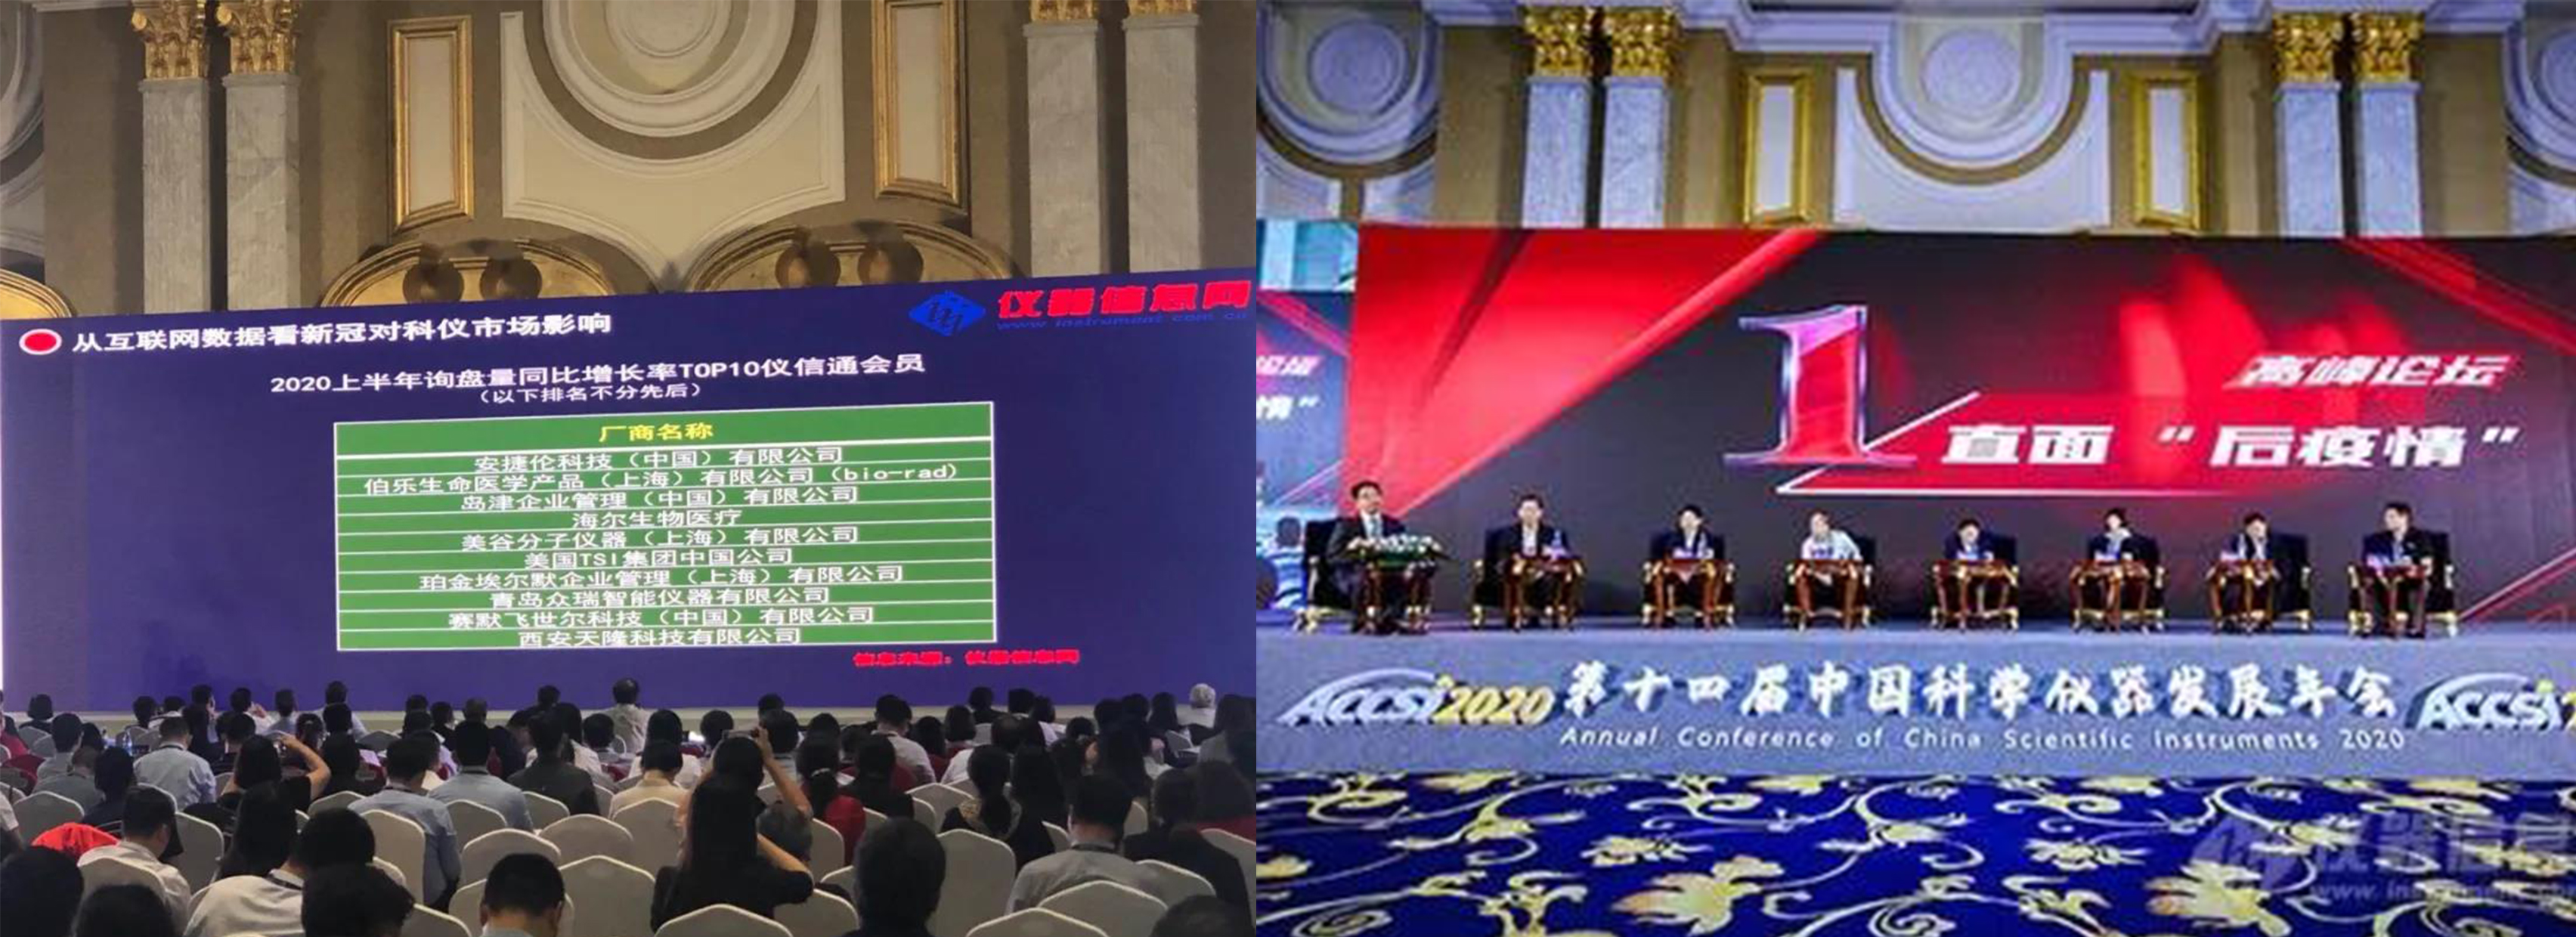 第十四届中国科学仪器发展年会盛大开幕 众瑞仪器应邀参展